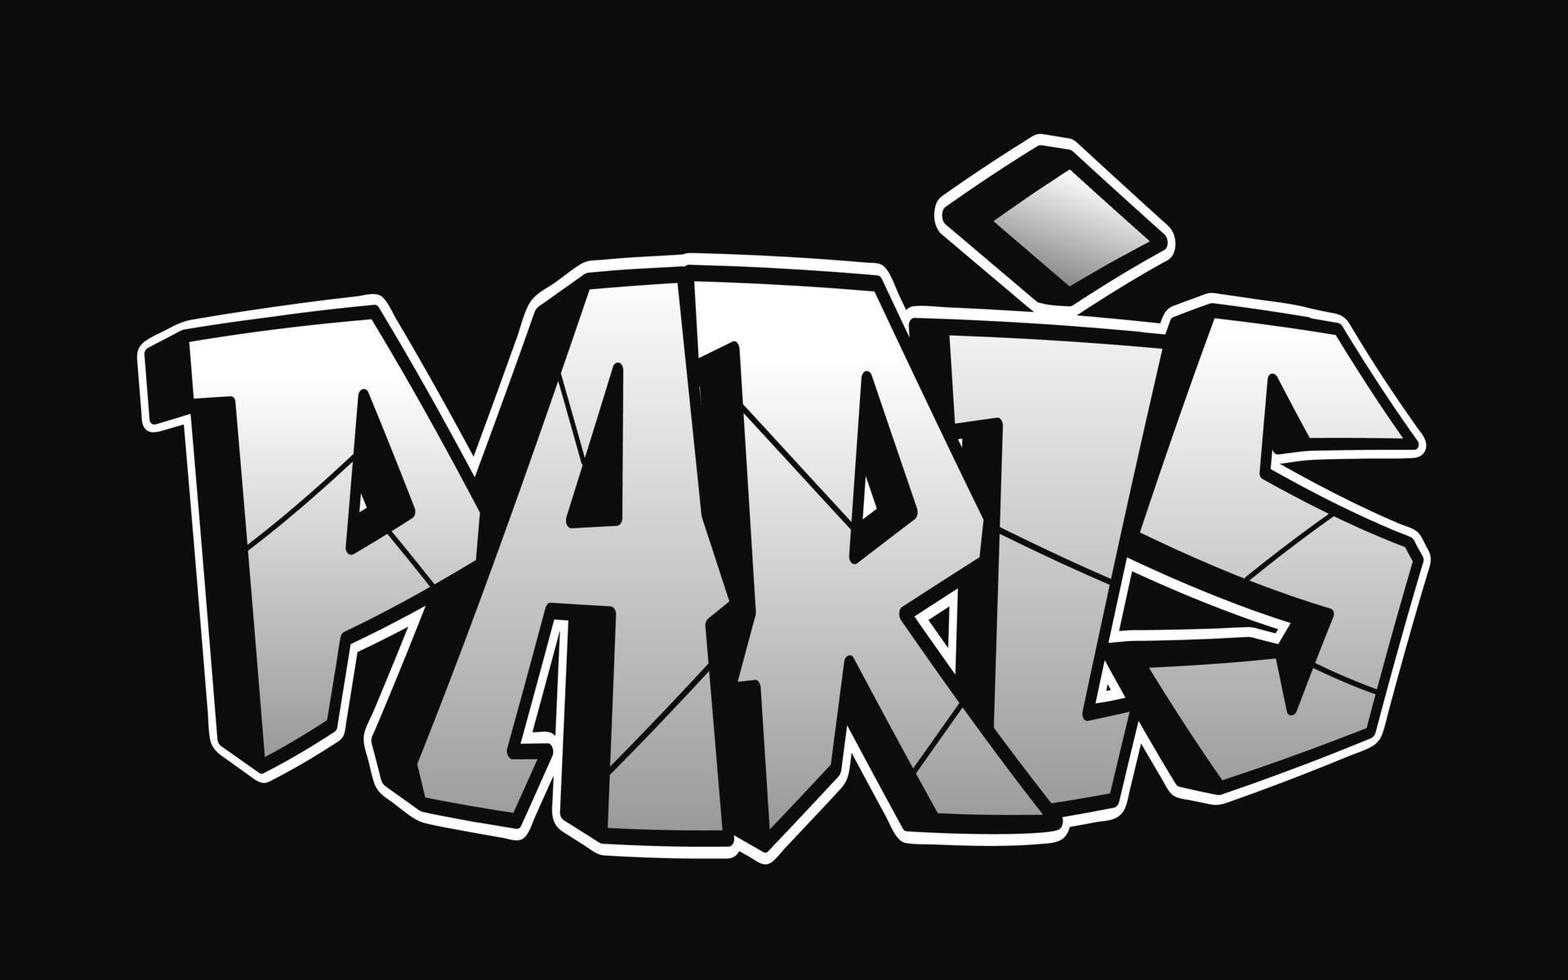 Parigi parola graffiti stile lettere.vettore mano disegnato scarabocchio cartone animato logo illustrazione.divertente freddo Parigi lettere, moda, graffiti stile Stampa per maglietta, manifesto concetto vettore